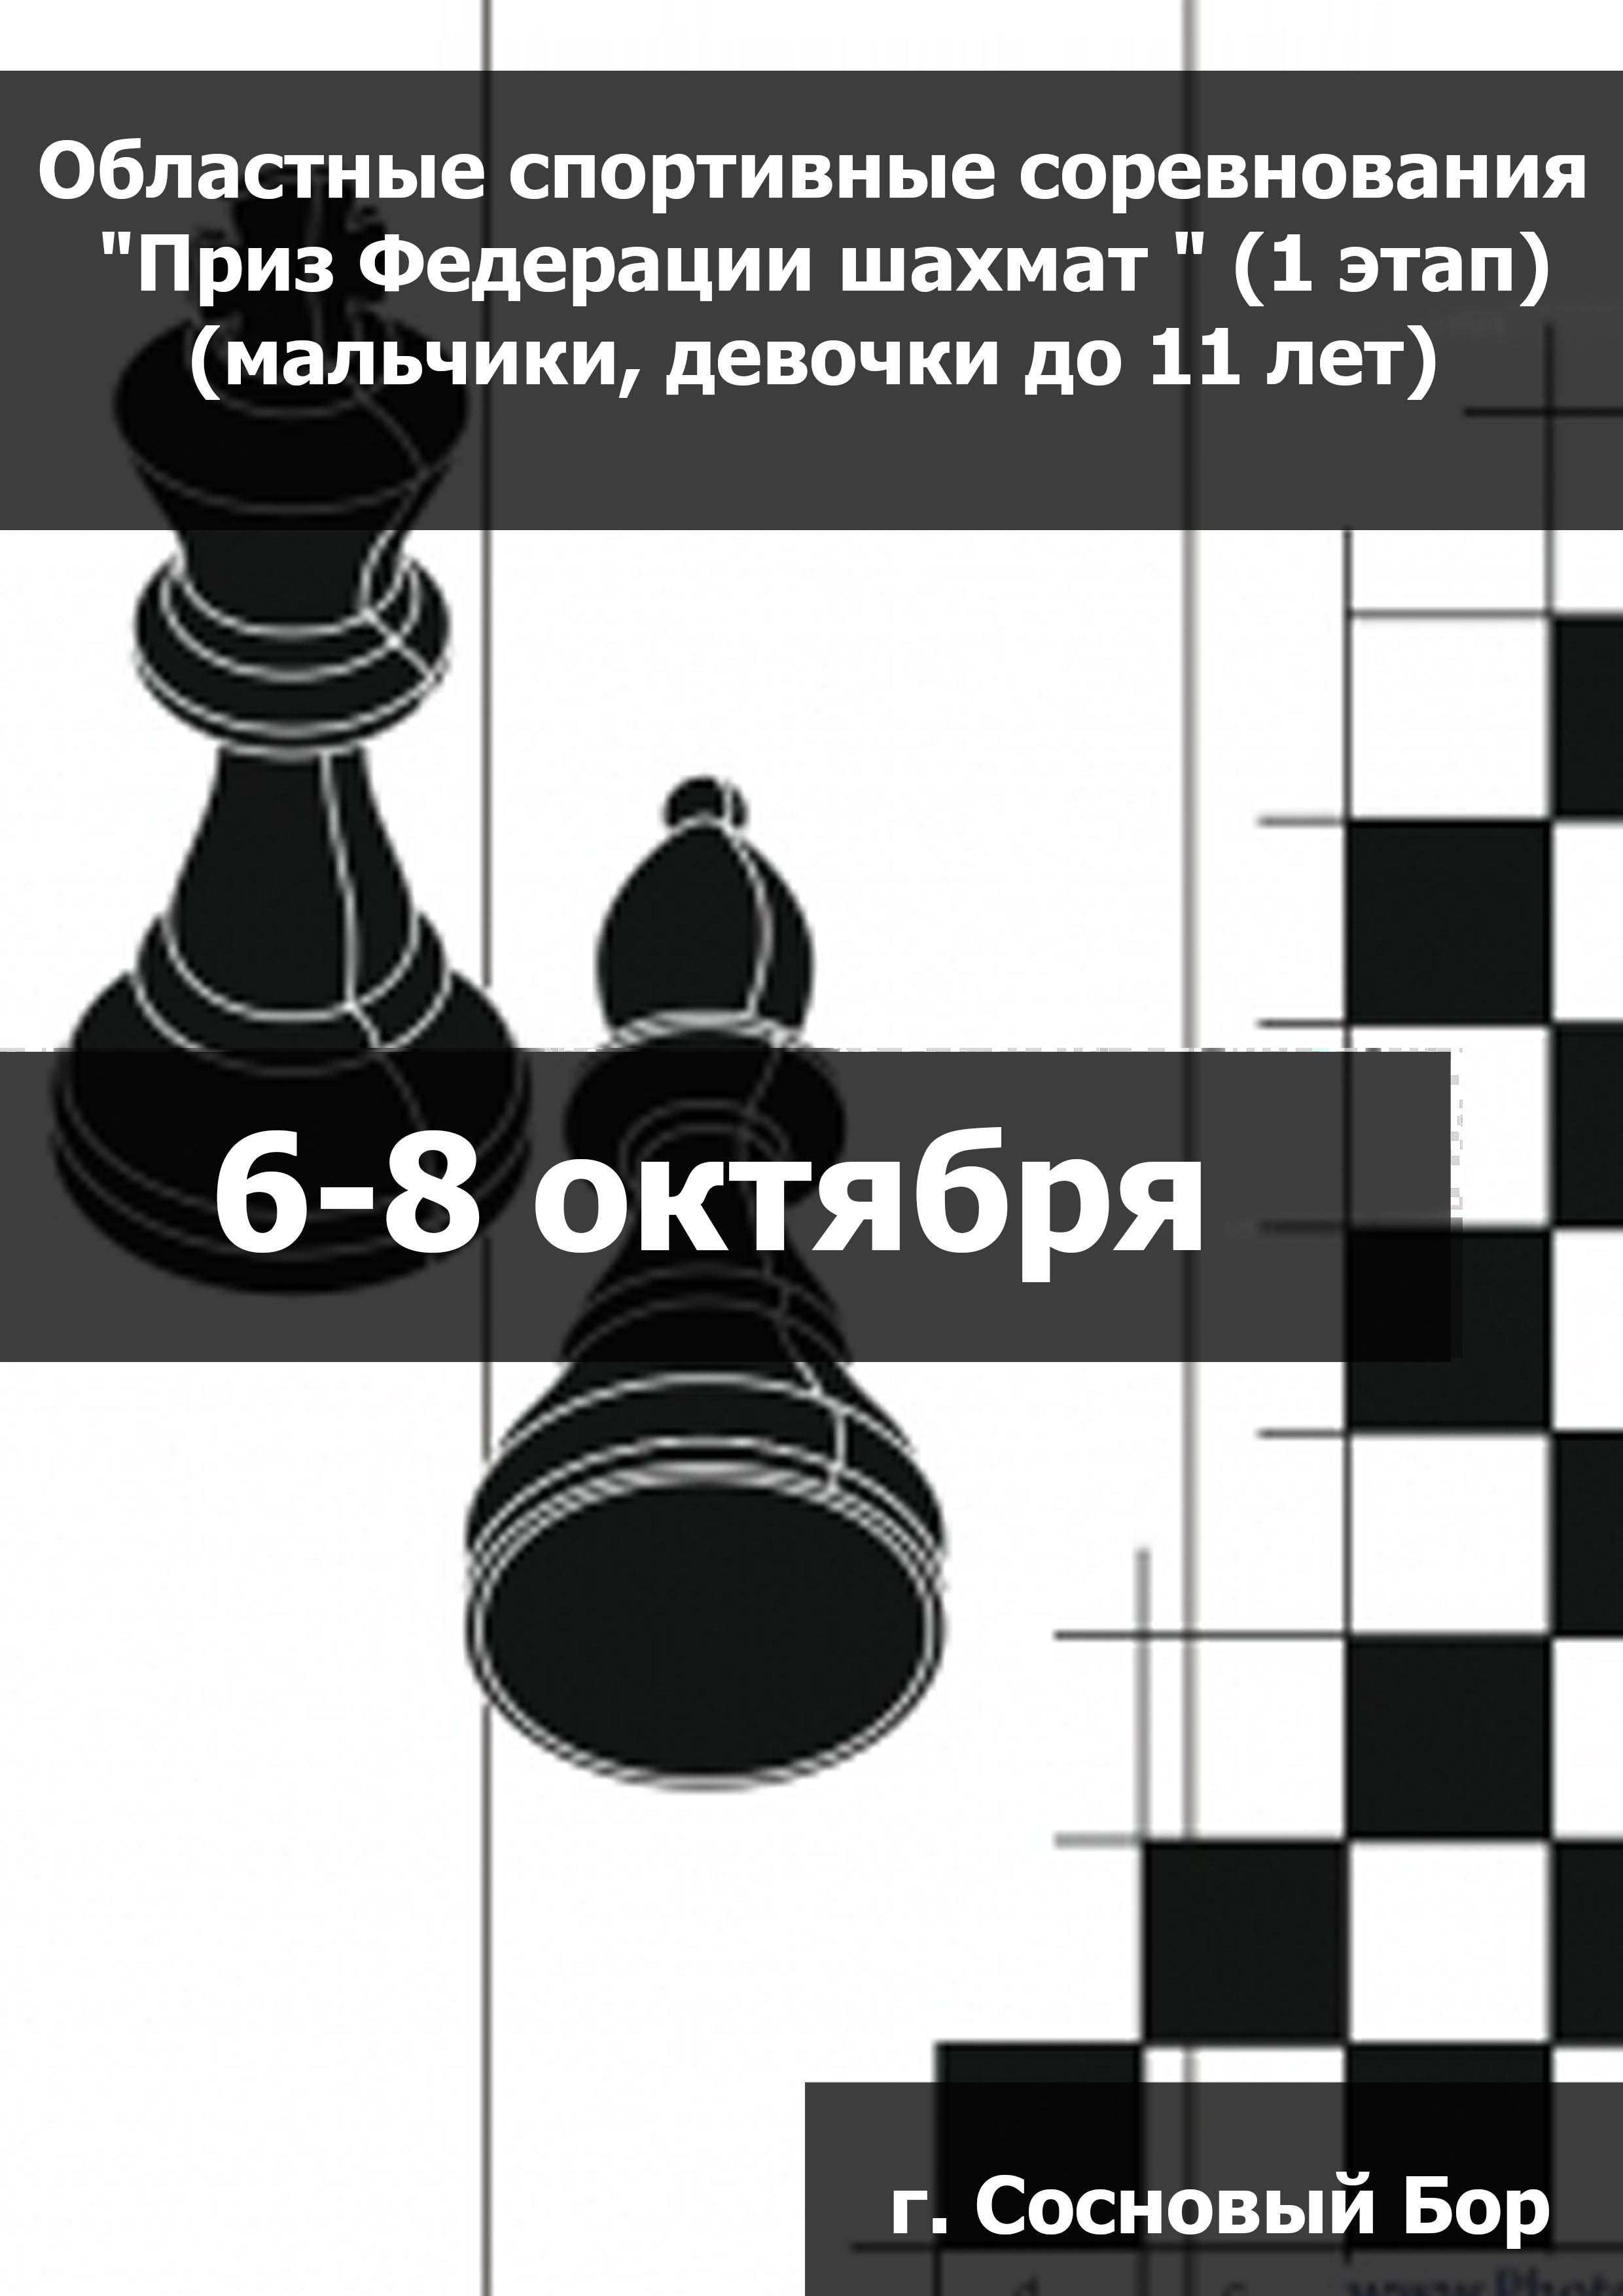 Областные спортивные соревнования "Приз Федерации шахмат " (1 этап) (мальчики, девочки до 11 лет) 6  Oktober
 2023  år
 